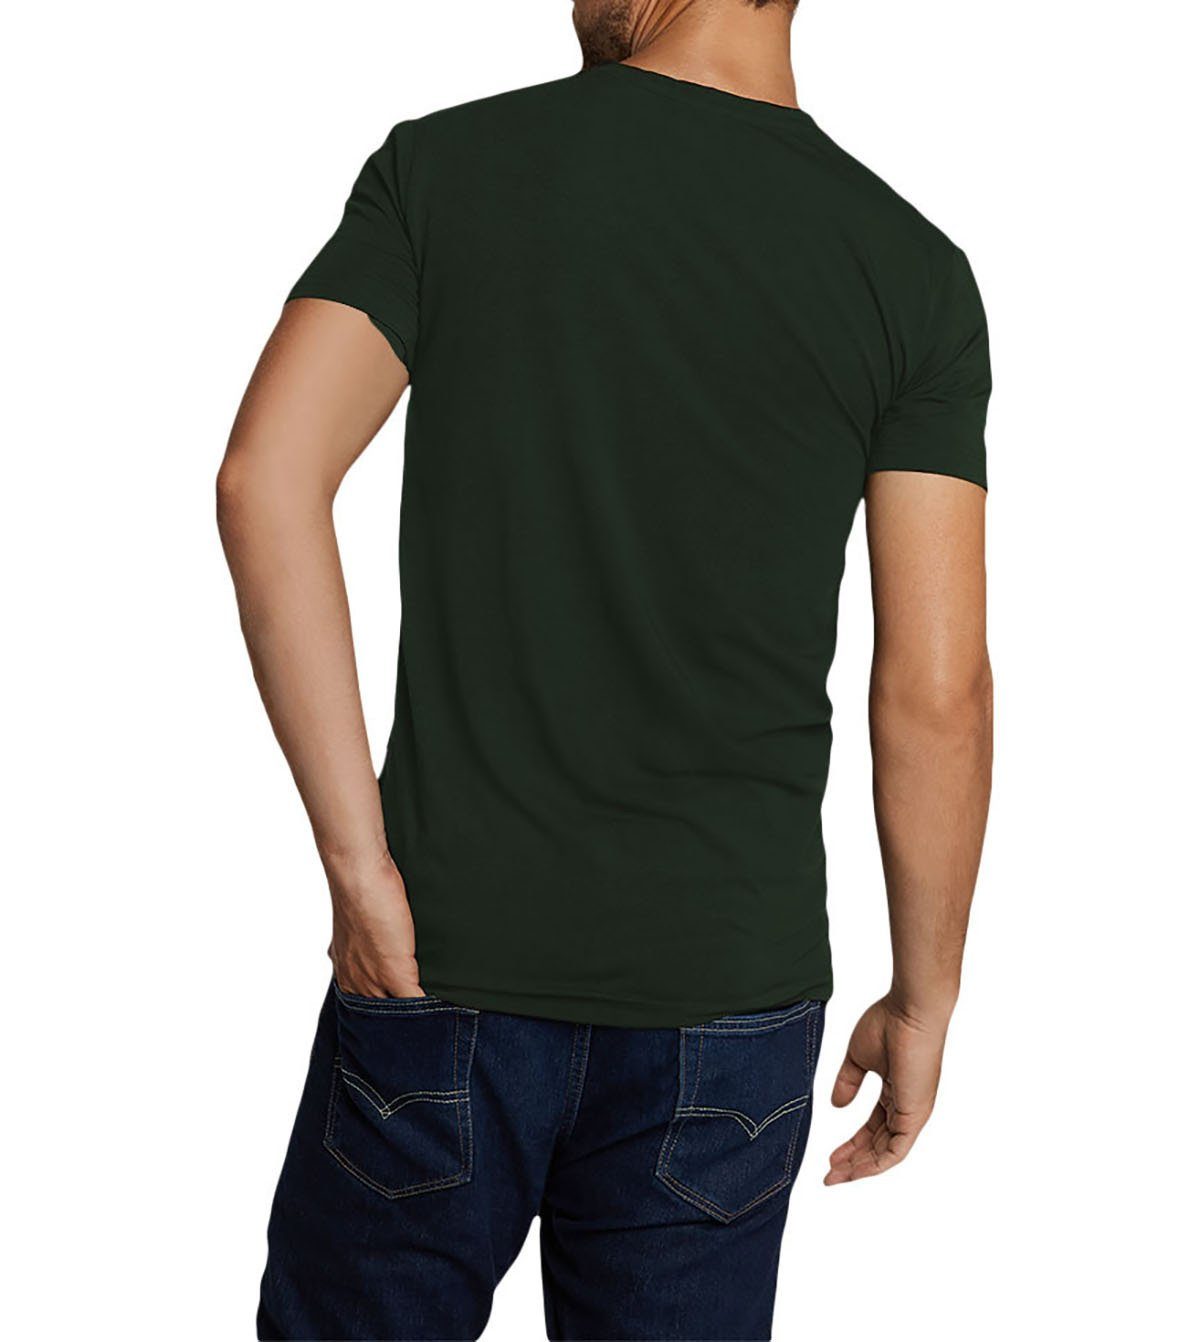 Bamboo basics VELO, - Herren T-Shirt 2er T-Shirt Unterhemd Pack Grün